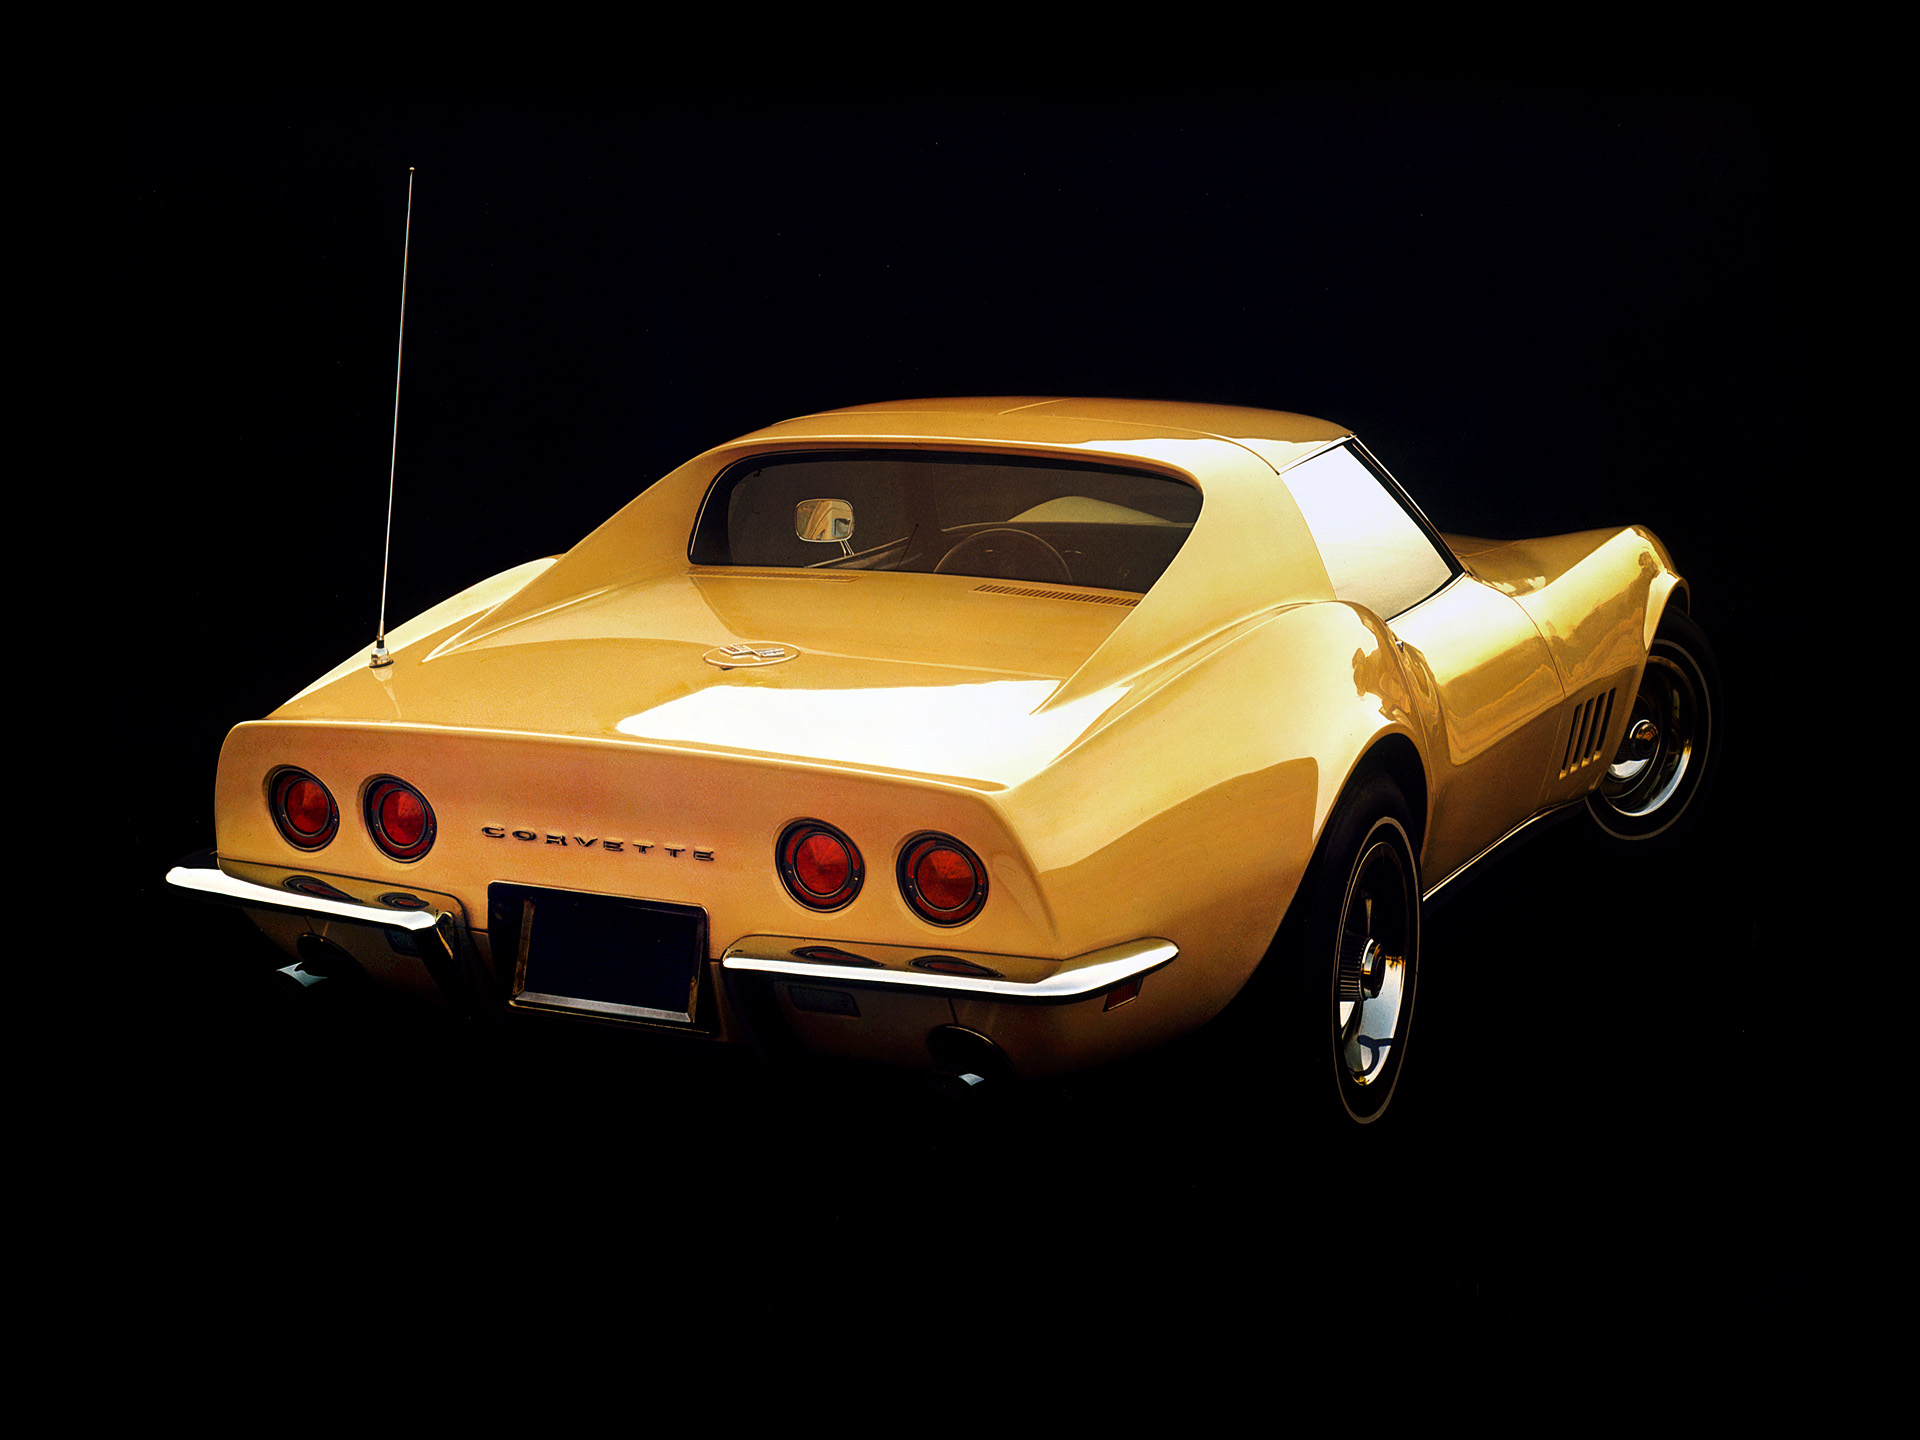  1968 - 1982 Chevrolet C3 Corvette Wallpaper.